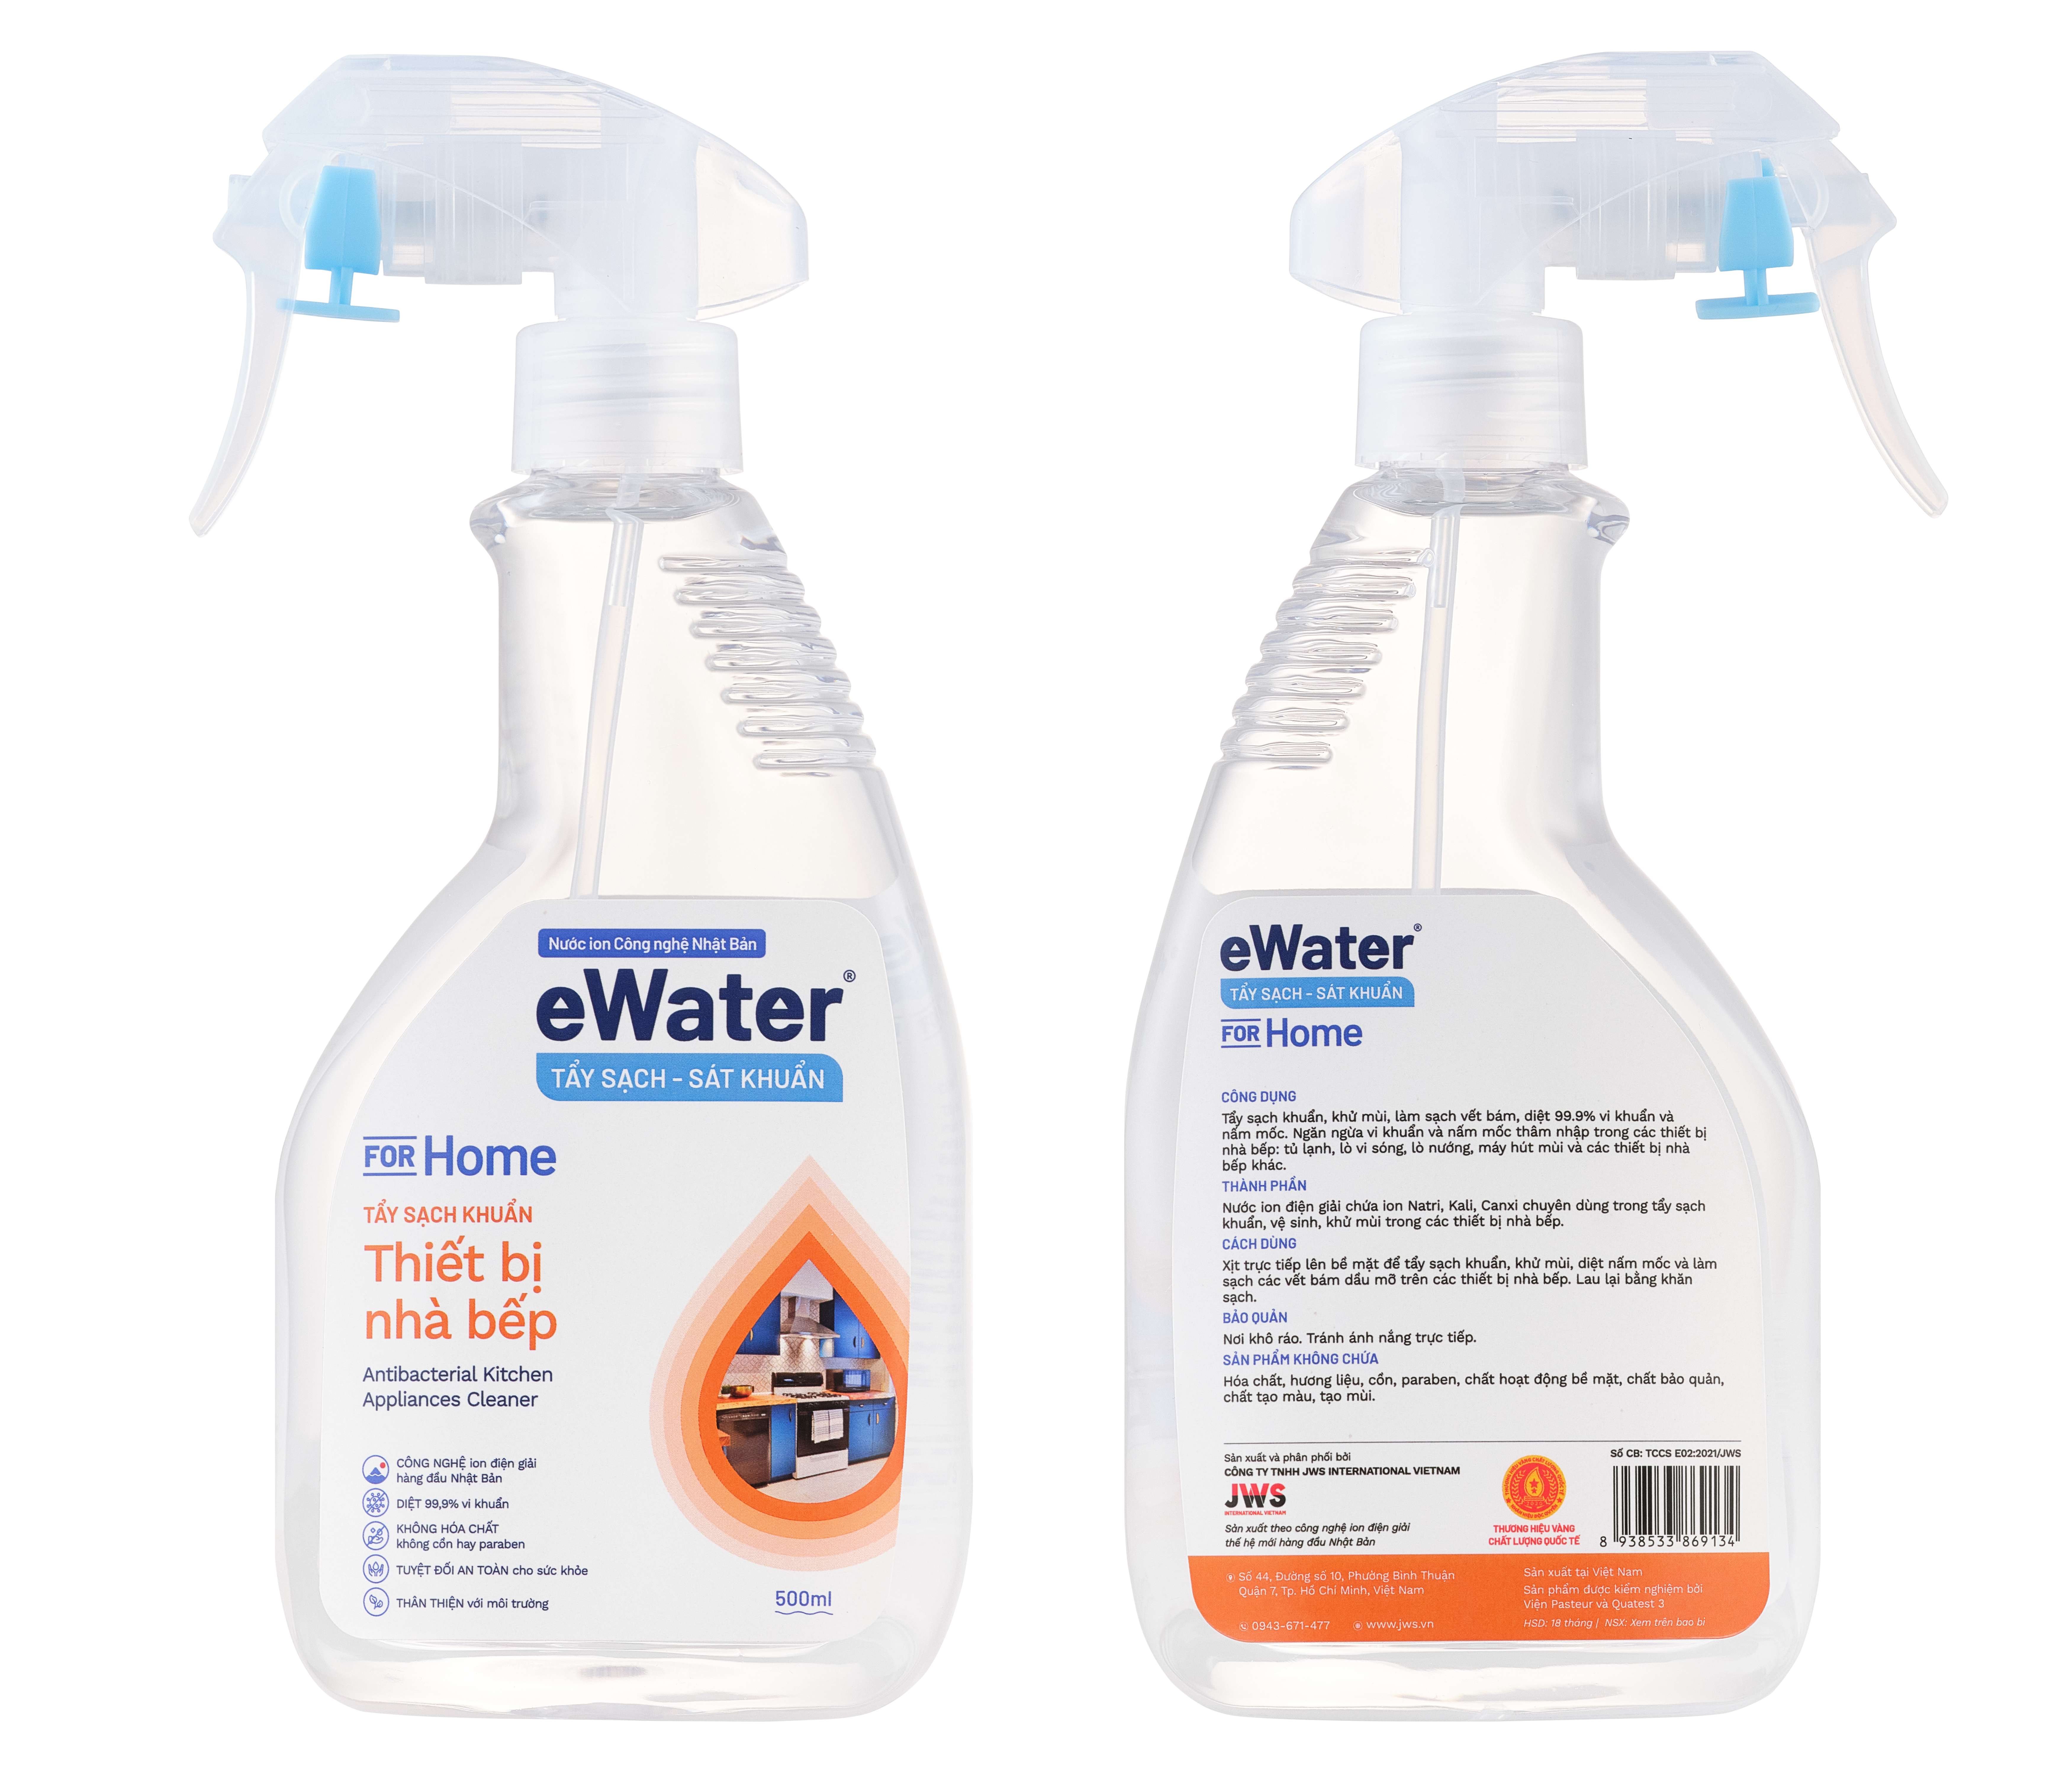 Nước ion điện giải eWater - Tẩy sạch khuẩn thiết bị nhà bếp (500ml)